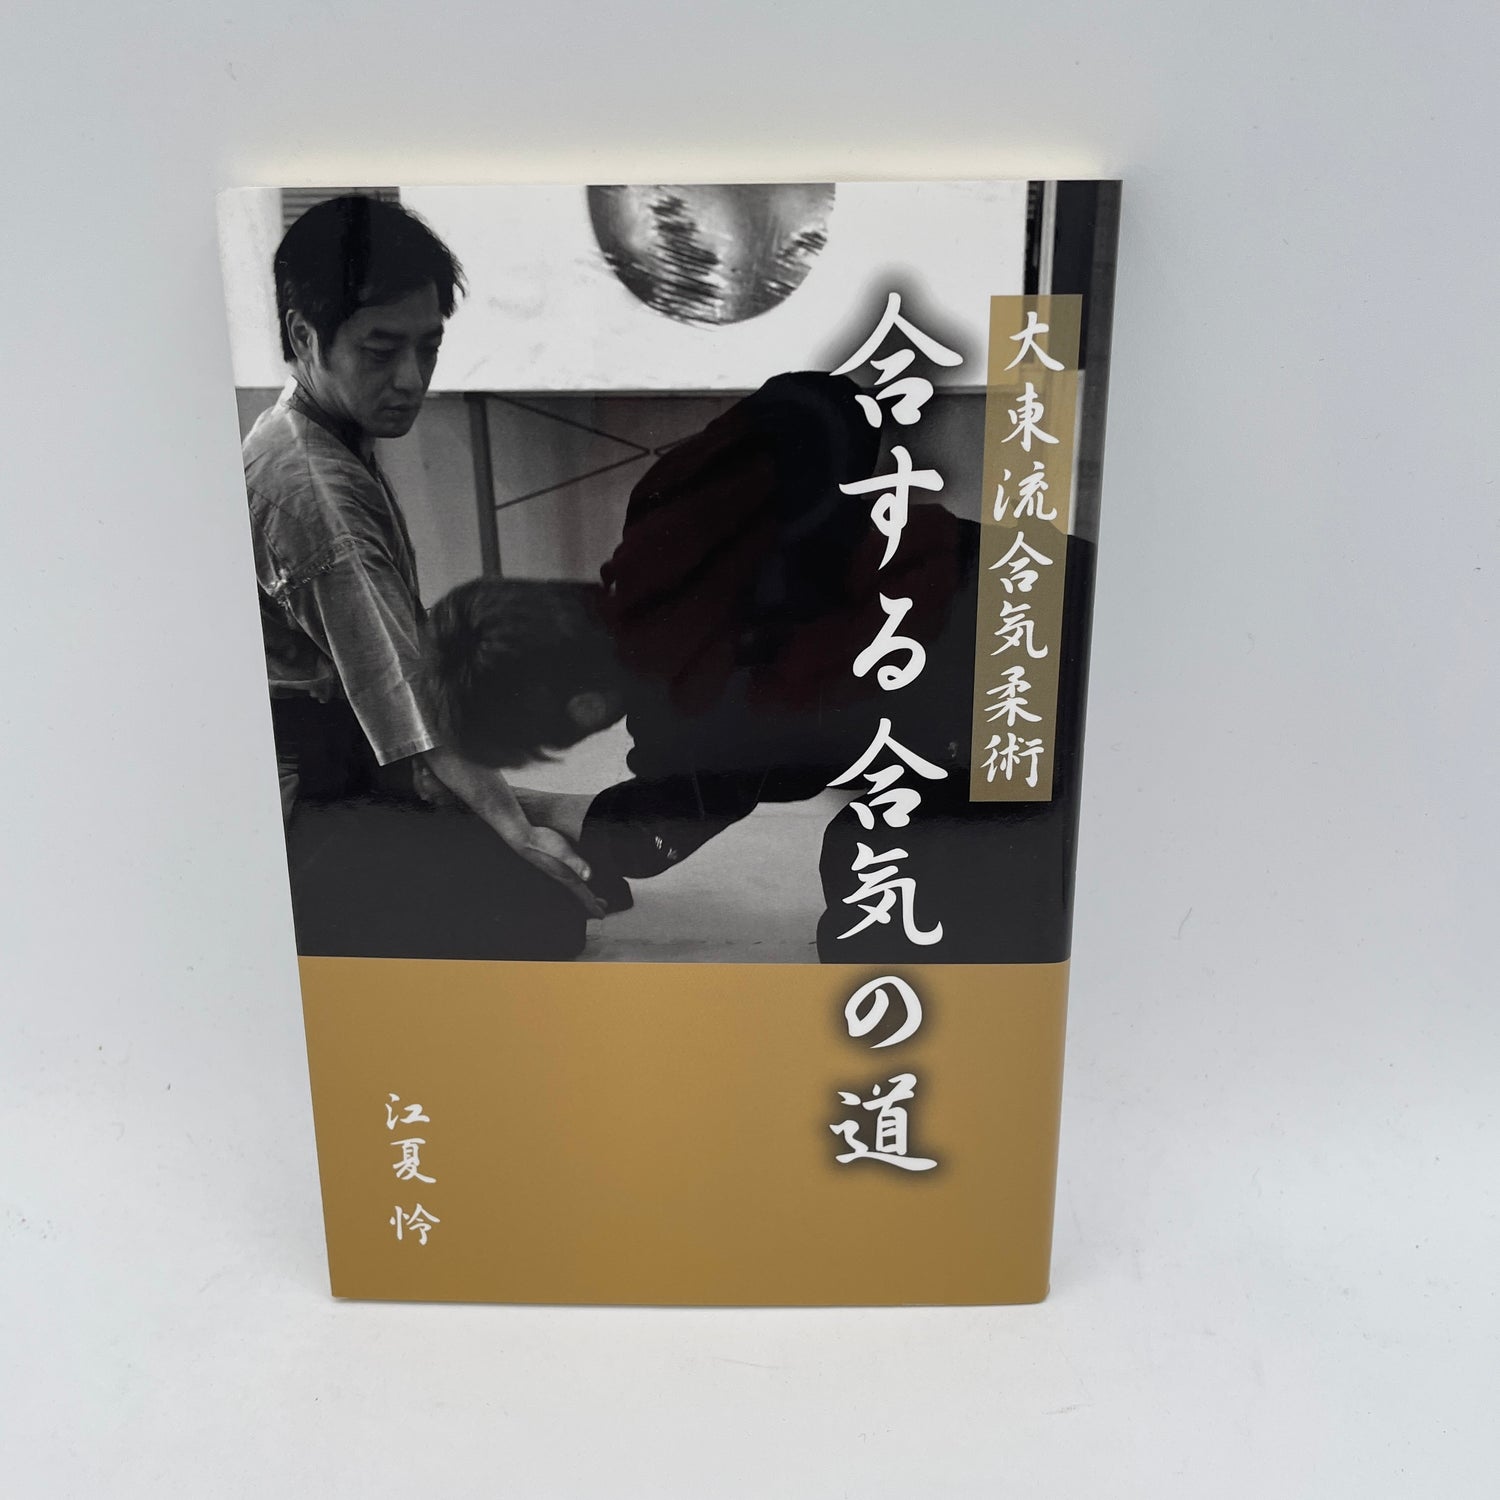 Daito Ryu Aikijujutsu: El camino del Aiki Libro de Rei Enatsu